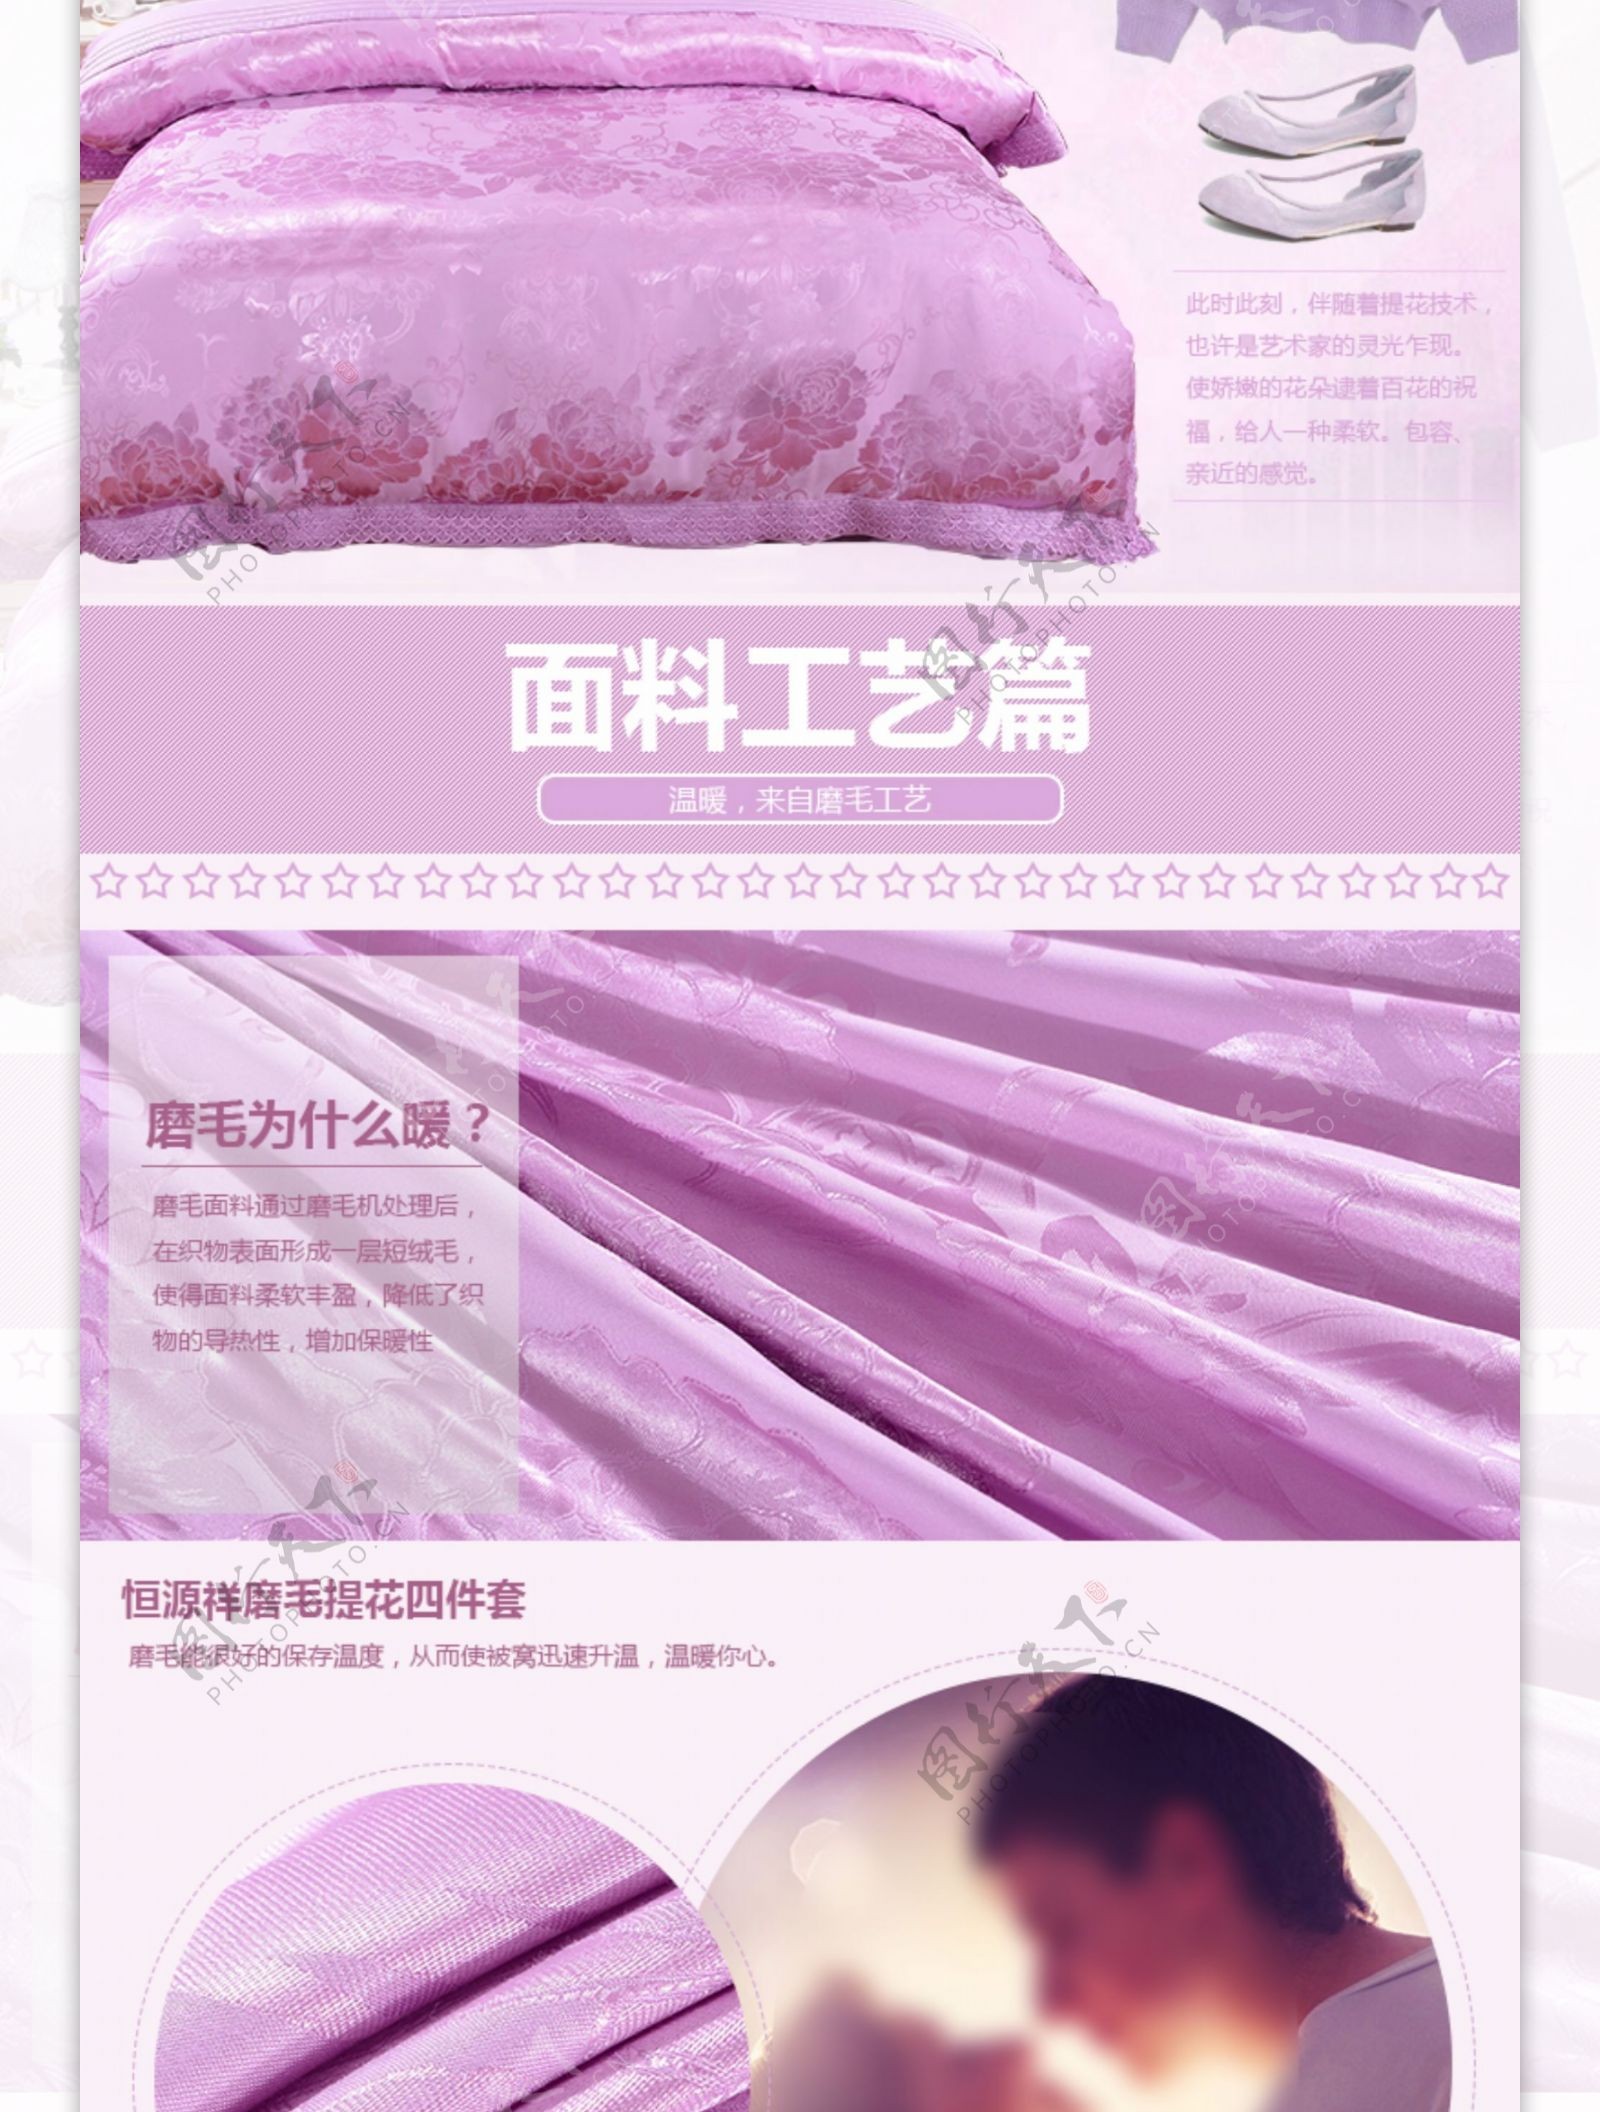 紫色梦幻四件套详情页